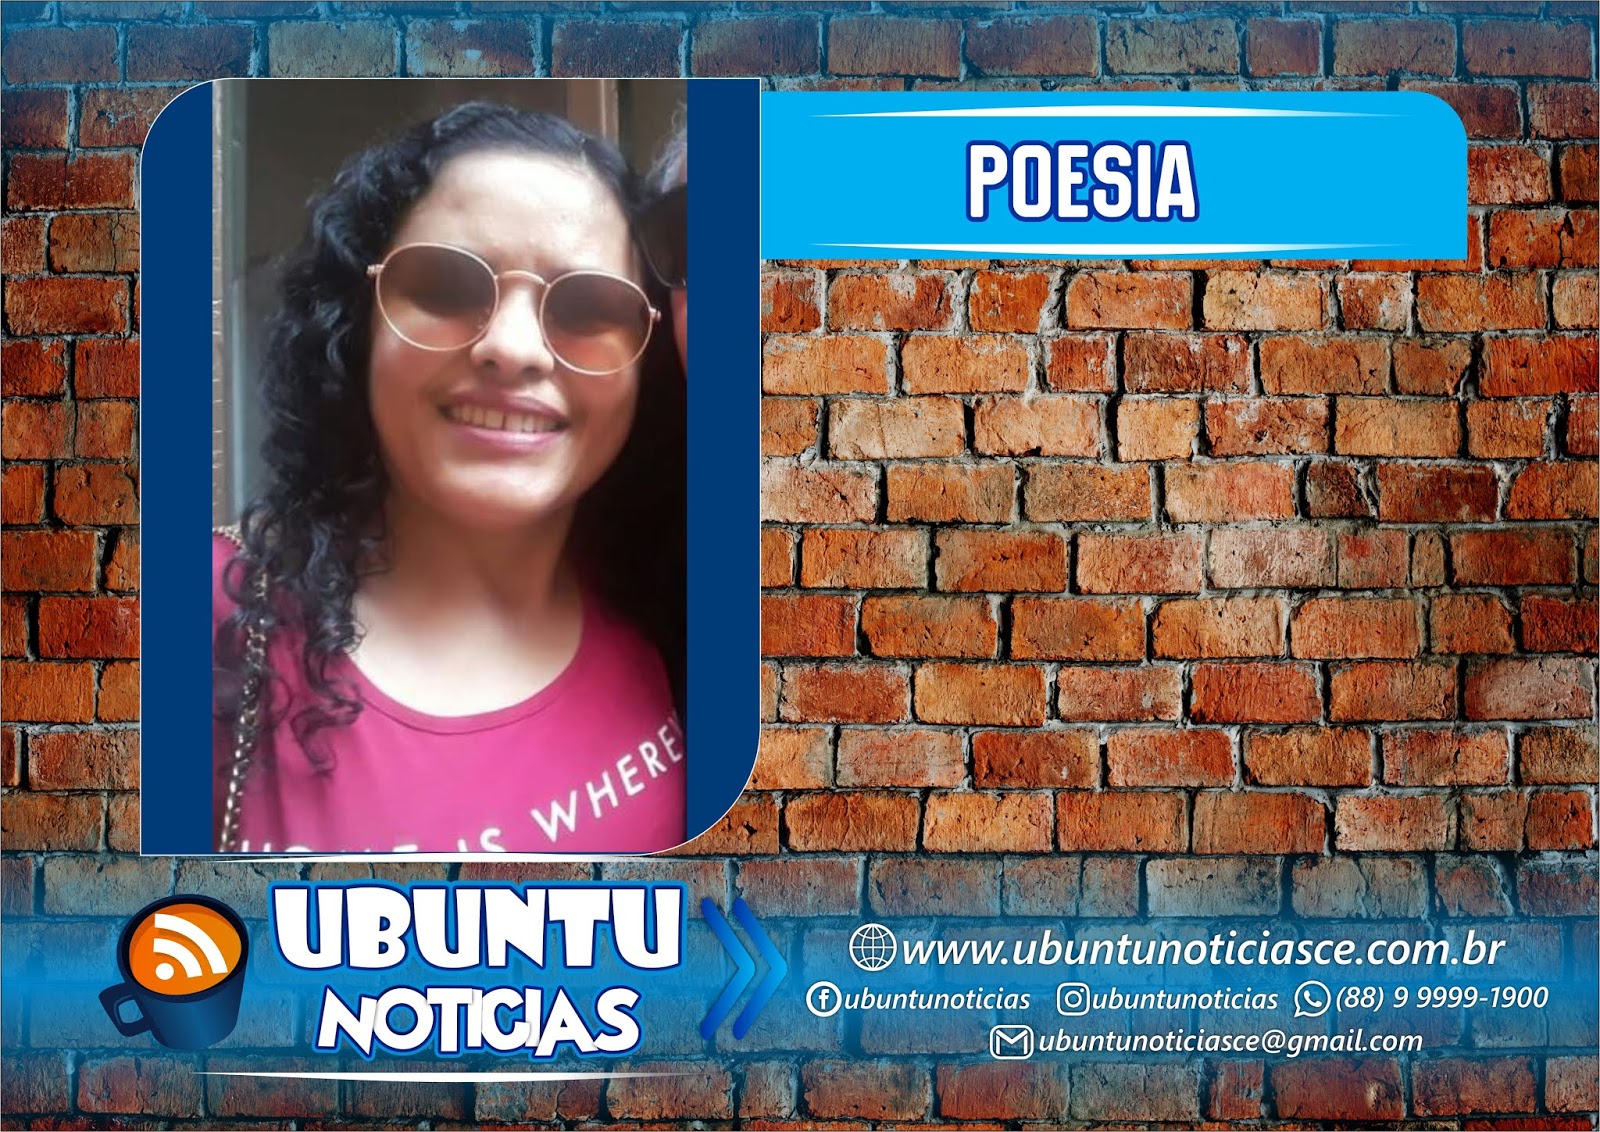 Portal de Comunicação do Cariri Oeste-Ceará Ubuntu Notícias: junho 2020